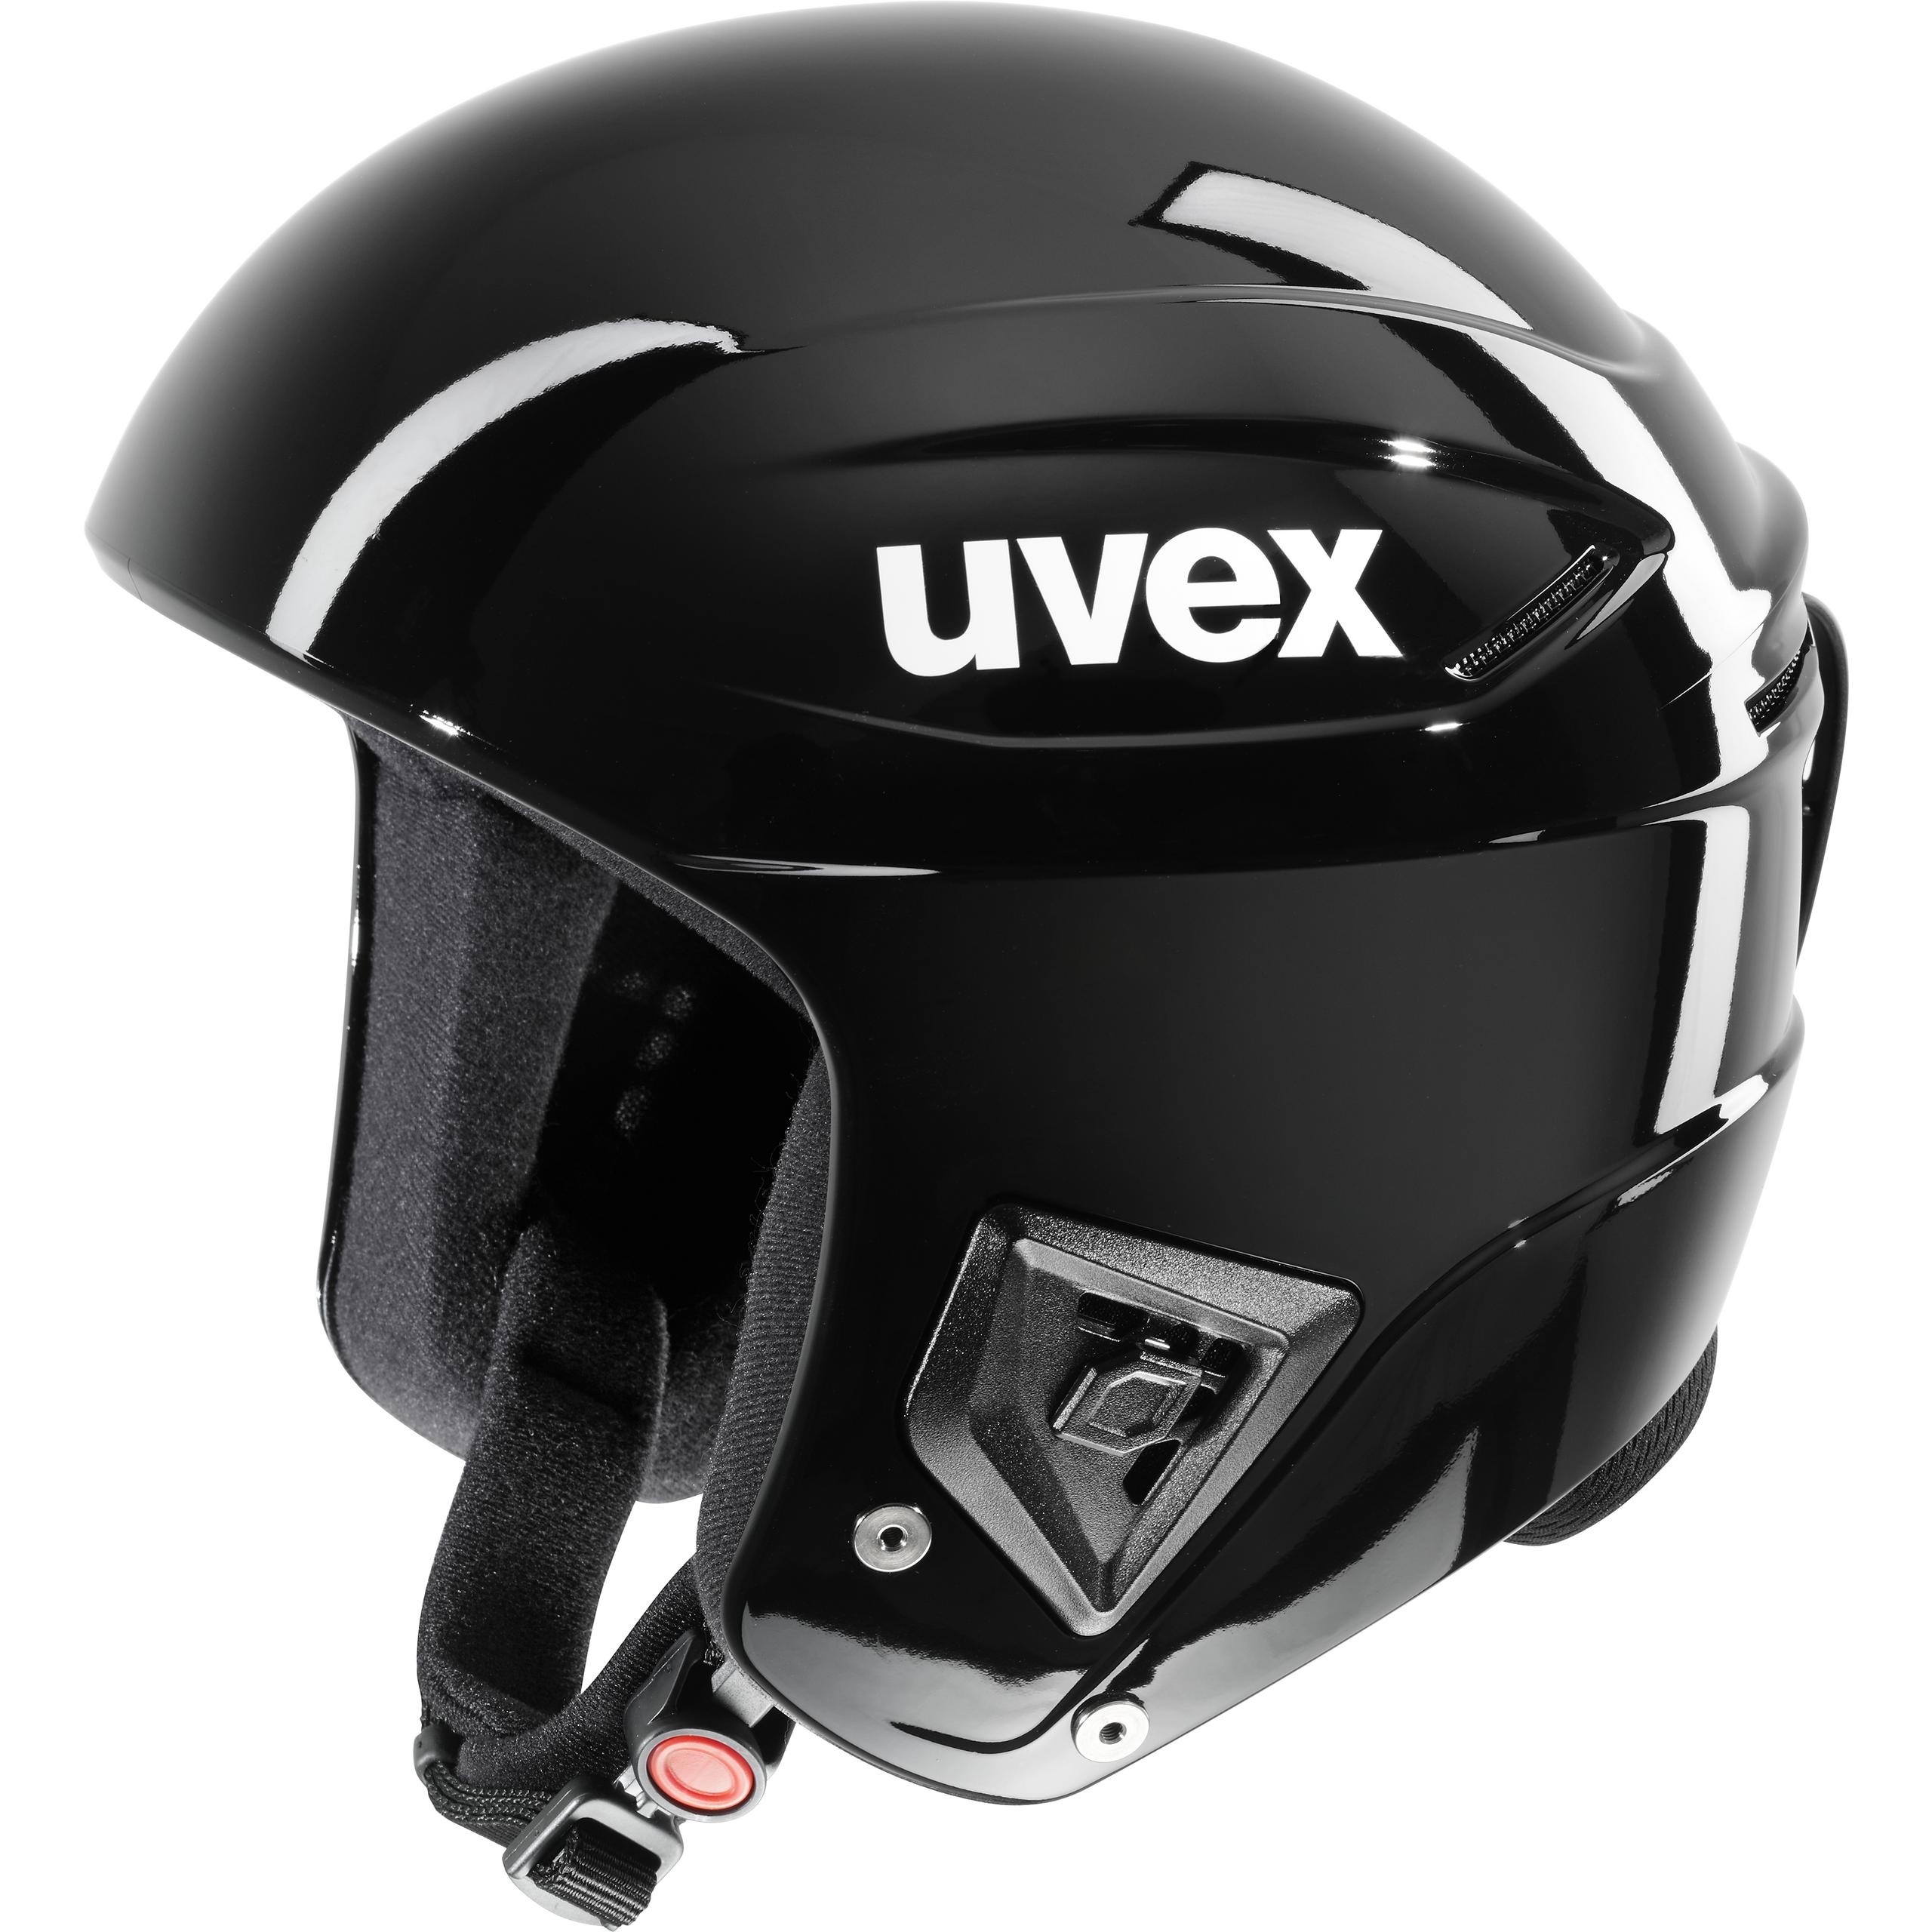 Graan kruising Zachtmoedigheid Uvex race + FIS ski helmet all black